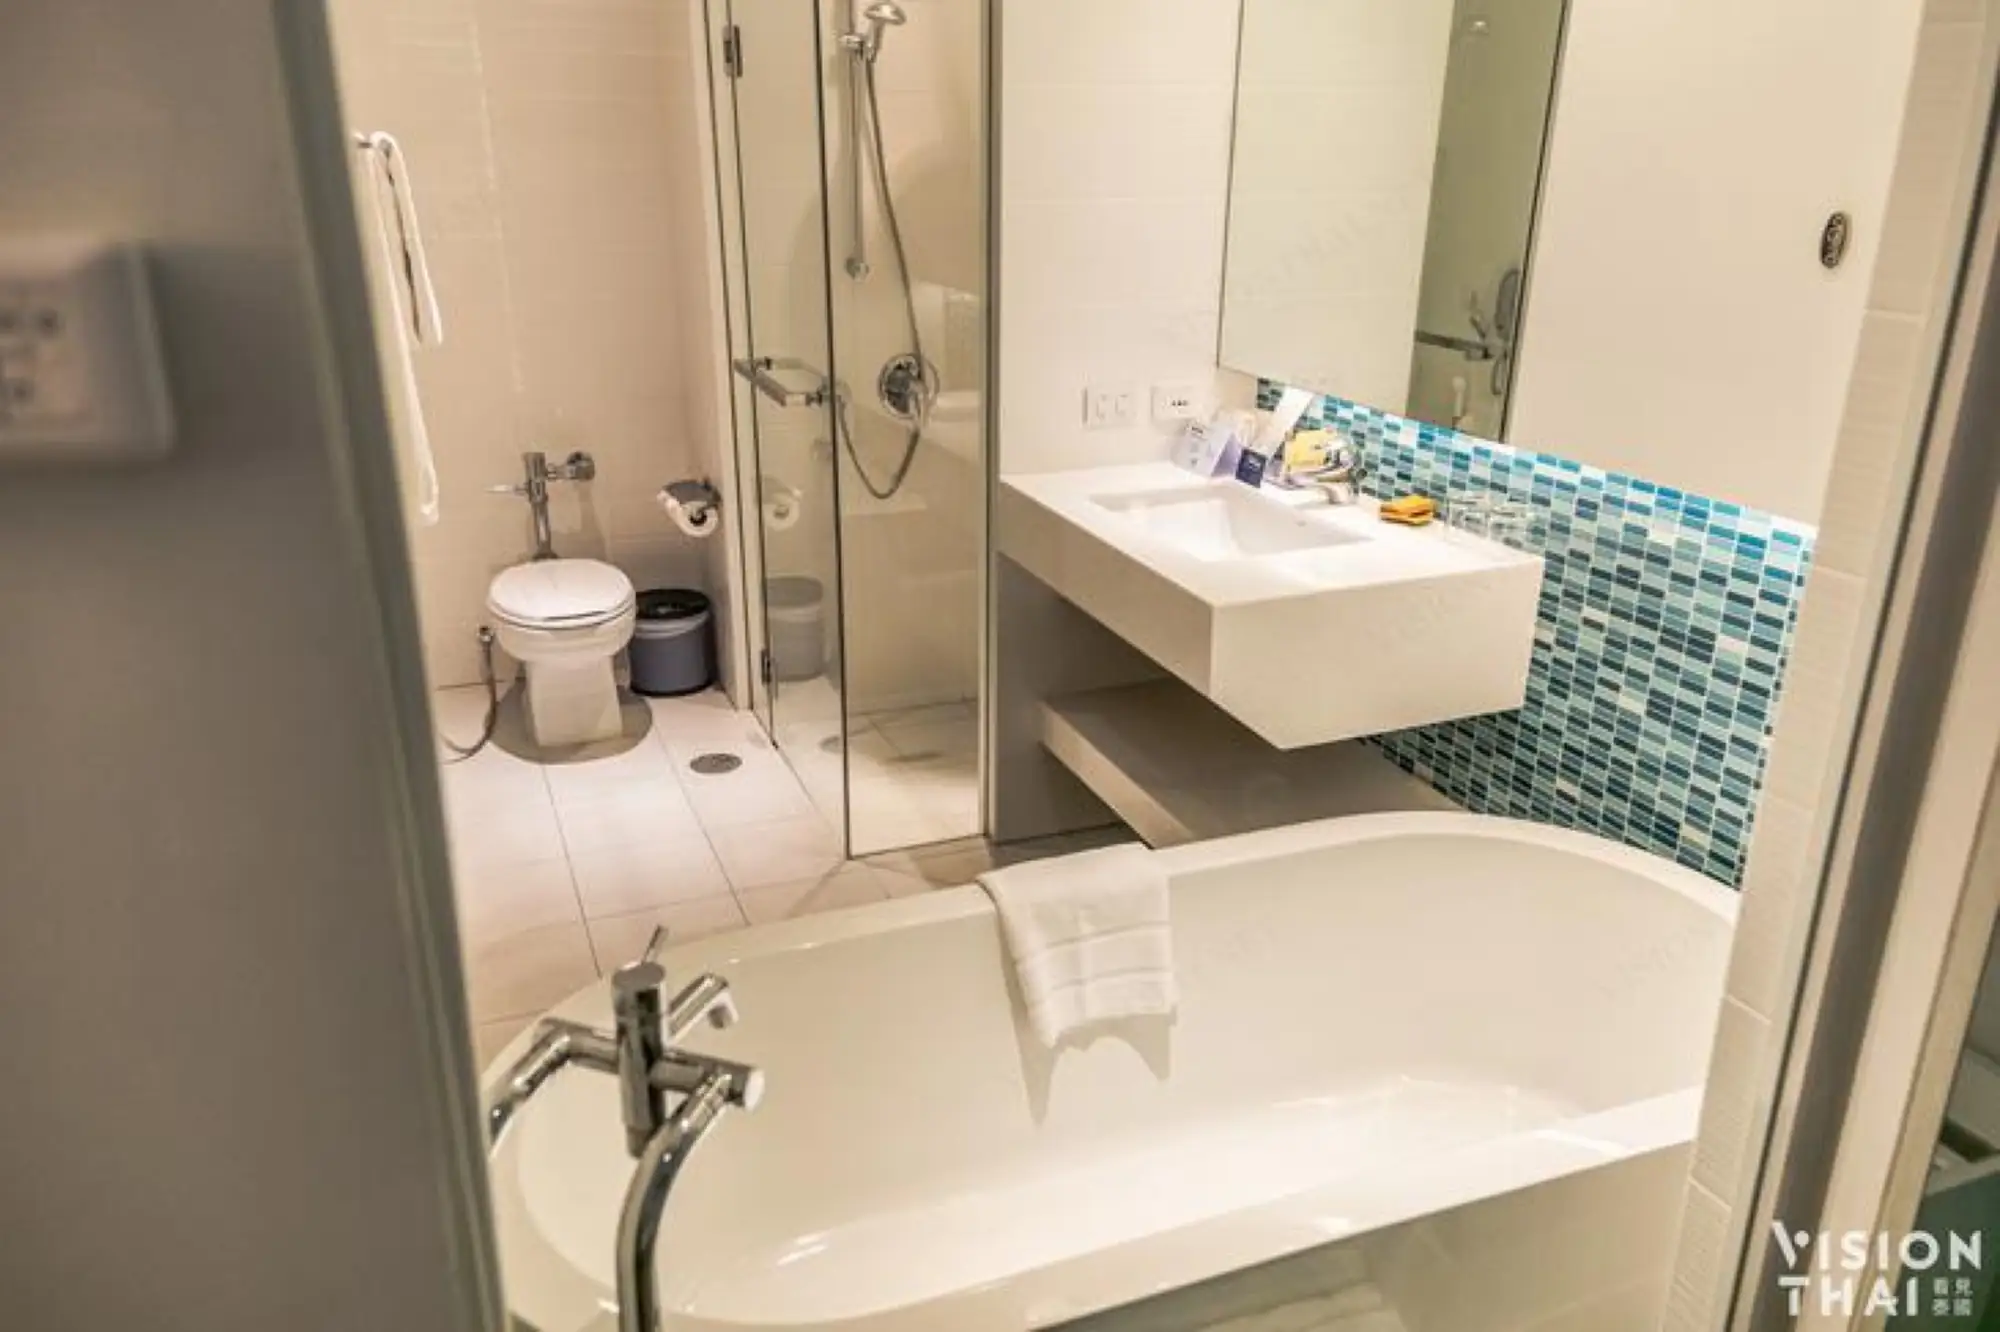 浴室为乾湿分离设计，有浴缸可泡澡。(VISION THAI)